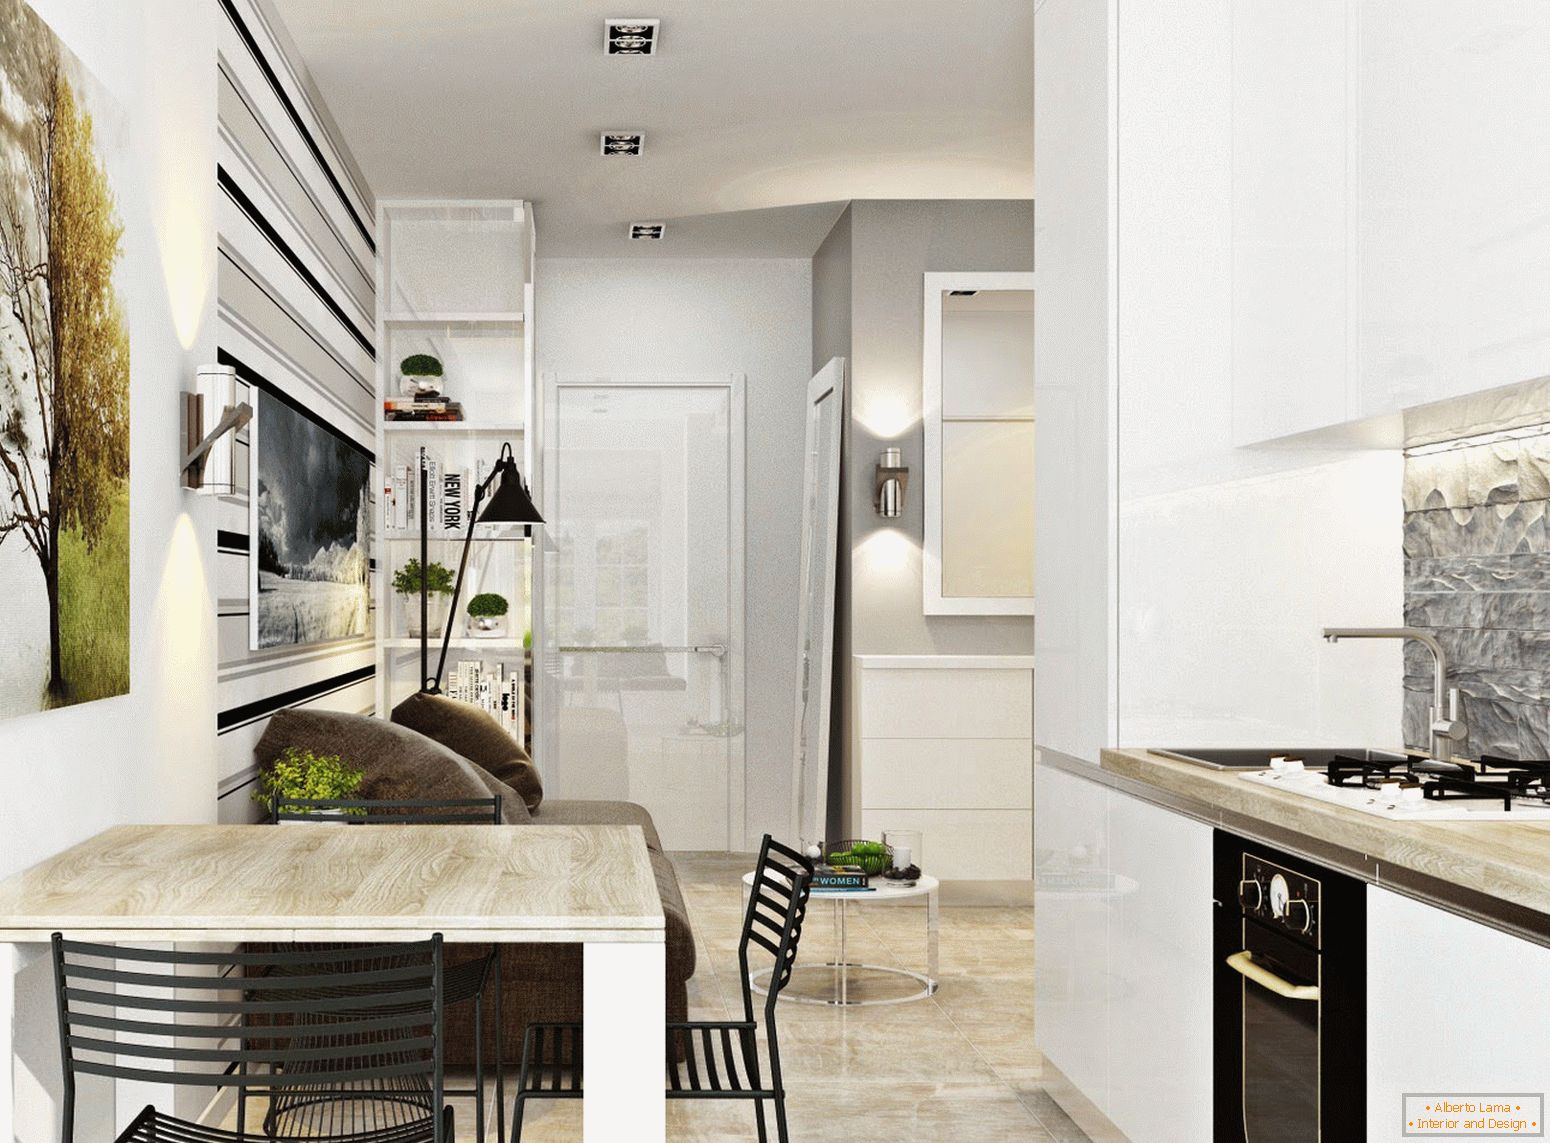 A konyha és az étkező belseje a fehér minimalizmus stílusában